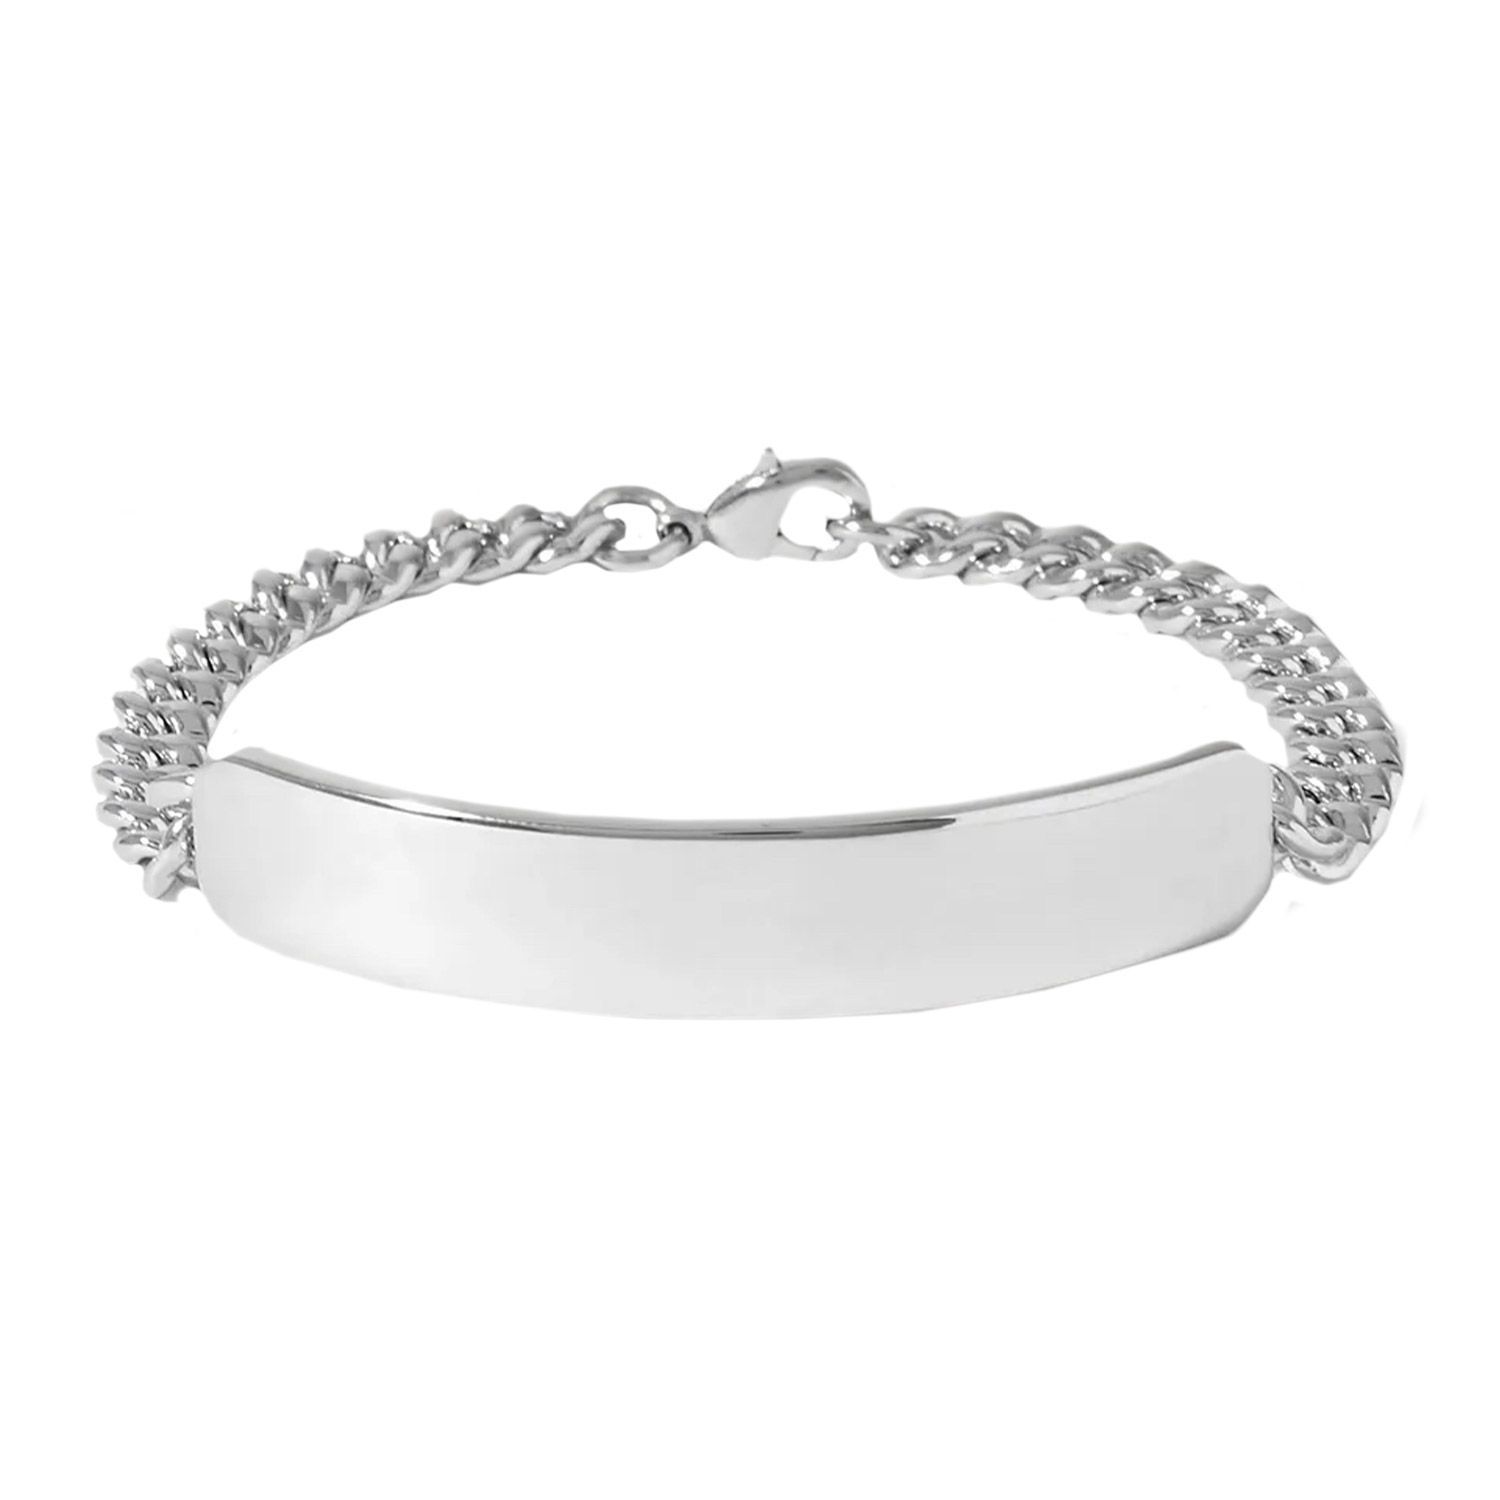 Gateway Jewelry: The Best Bracelets for Men